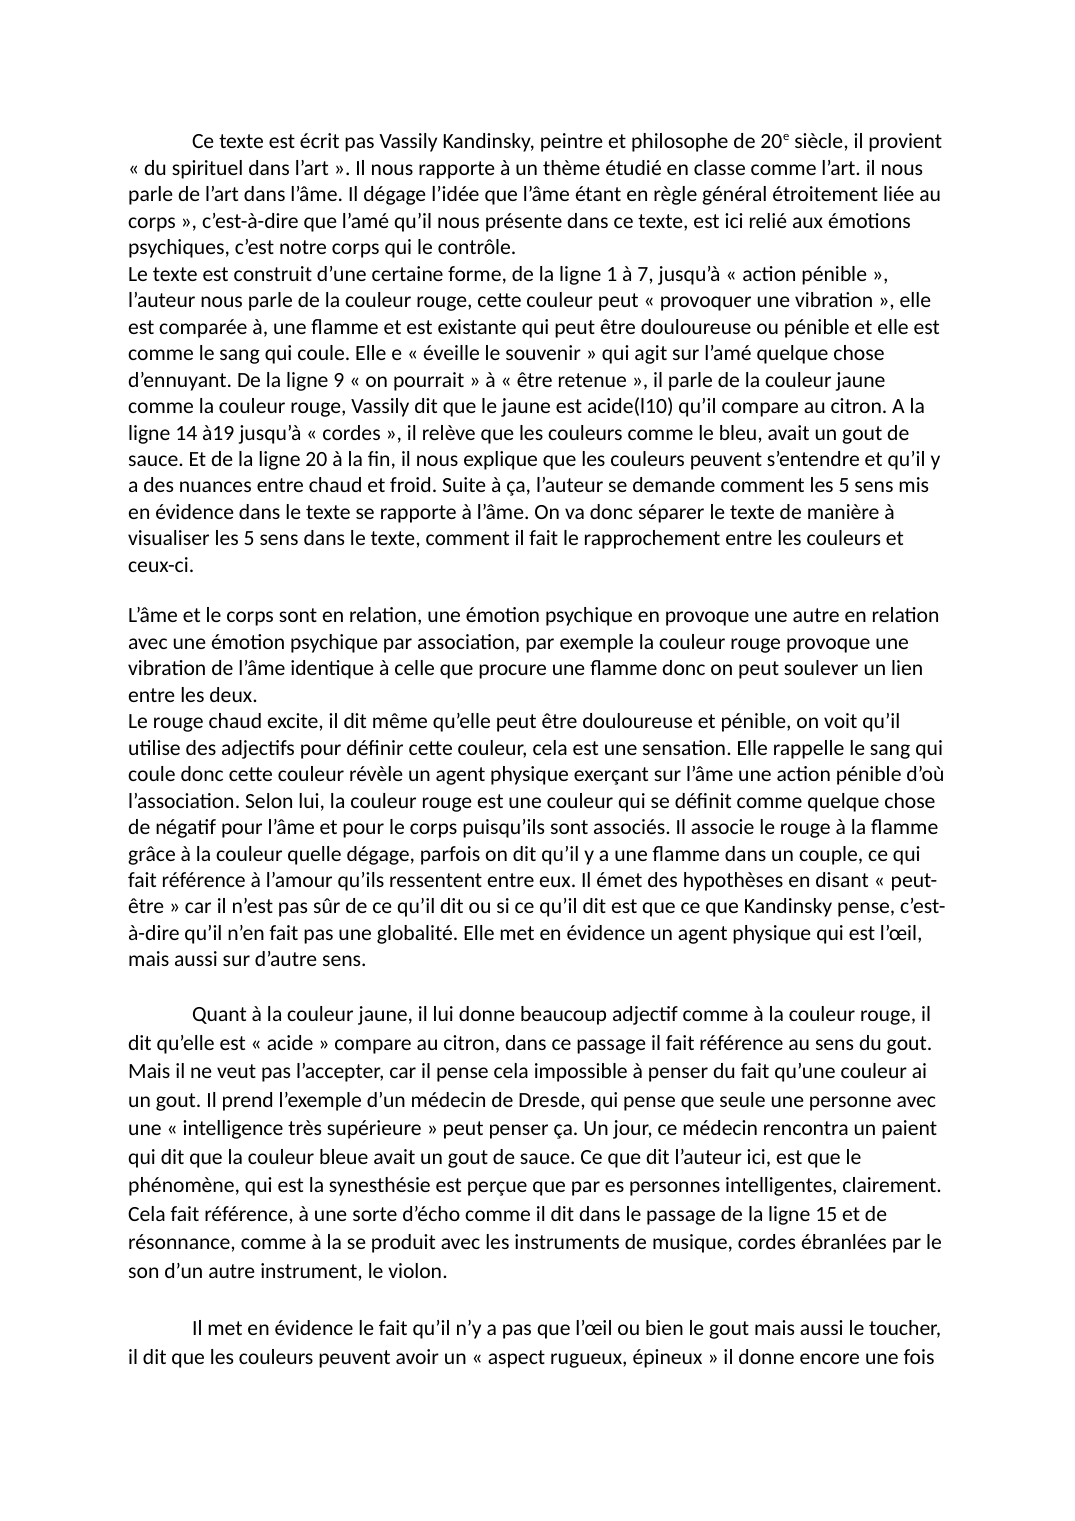 Prévisualisation du document explication de texte: Vassily Kandinsky in « du spirituel dans l’art ».